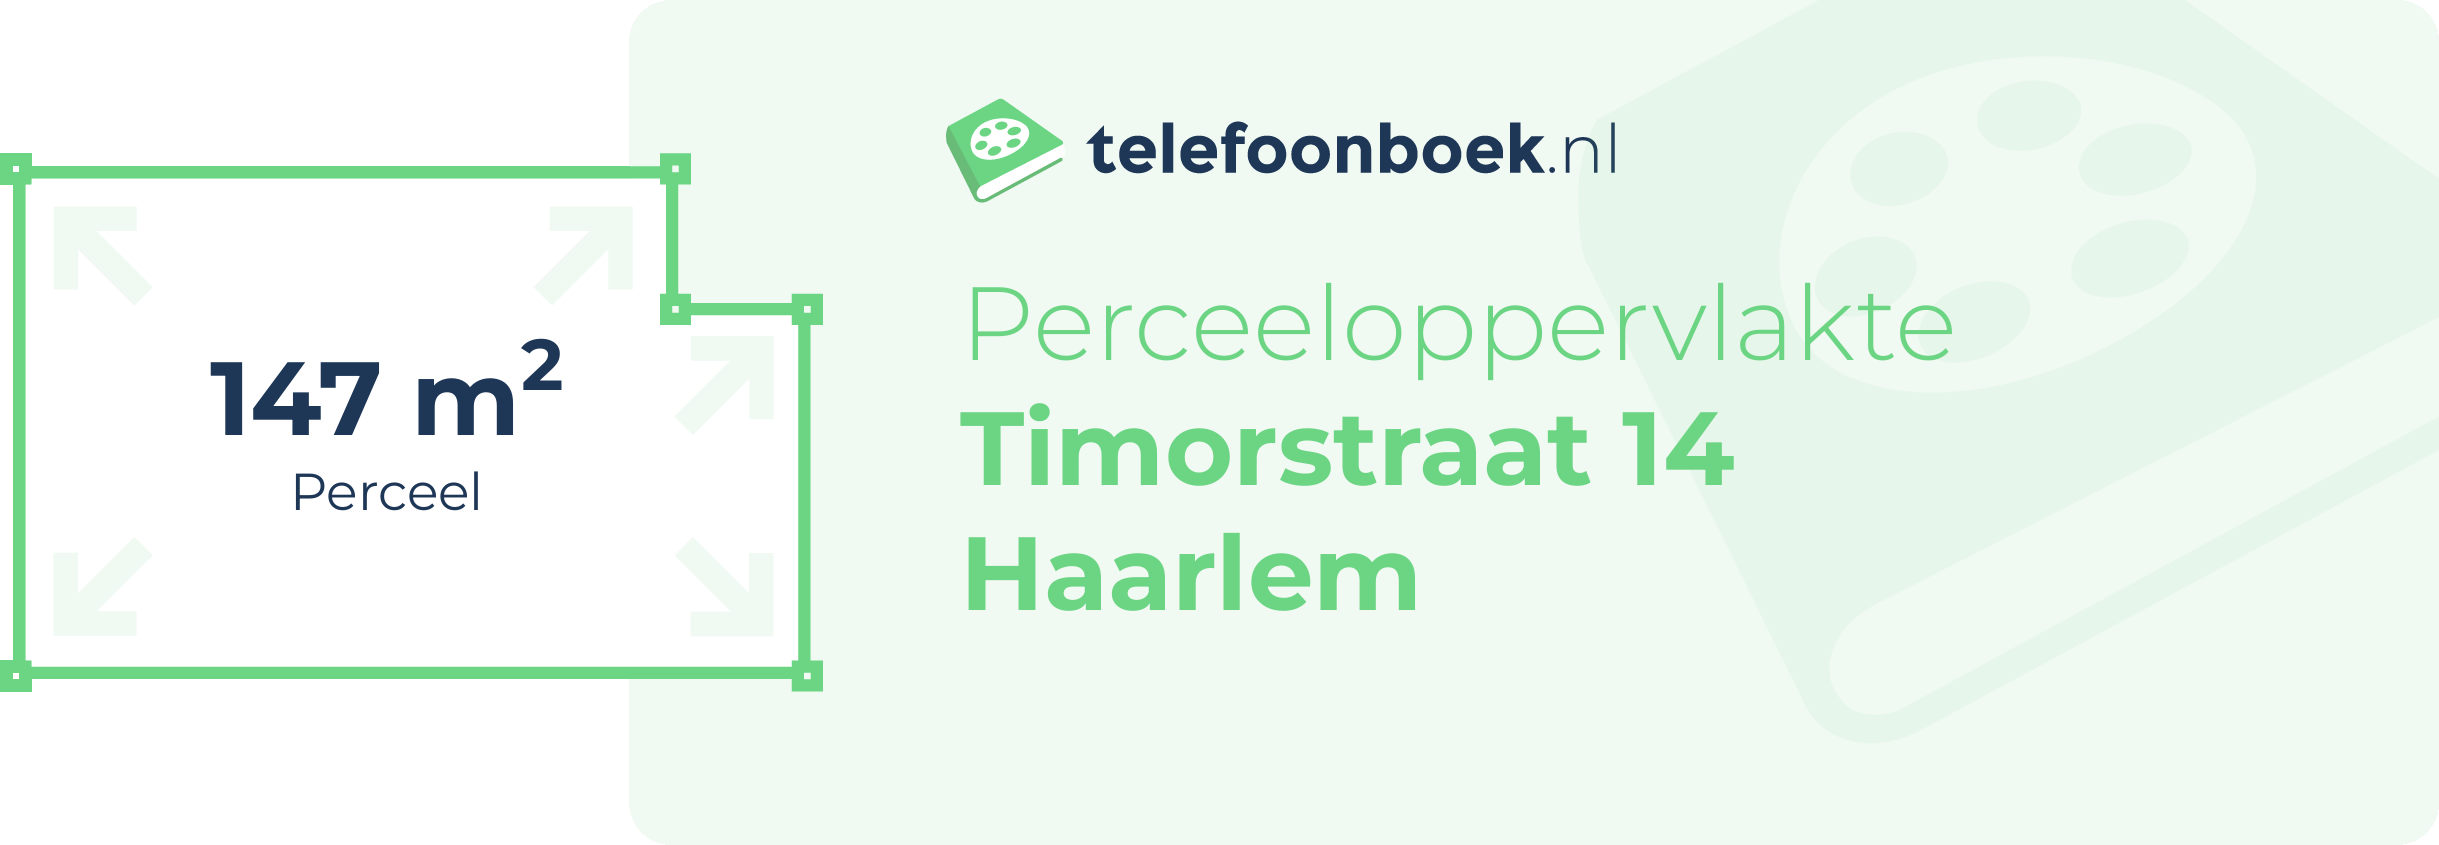 Perceeloppervlakte Timorstraat 14 Haarlem